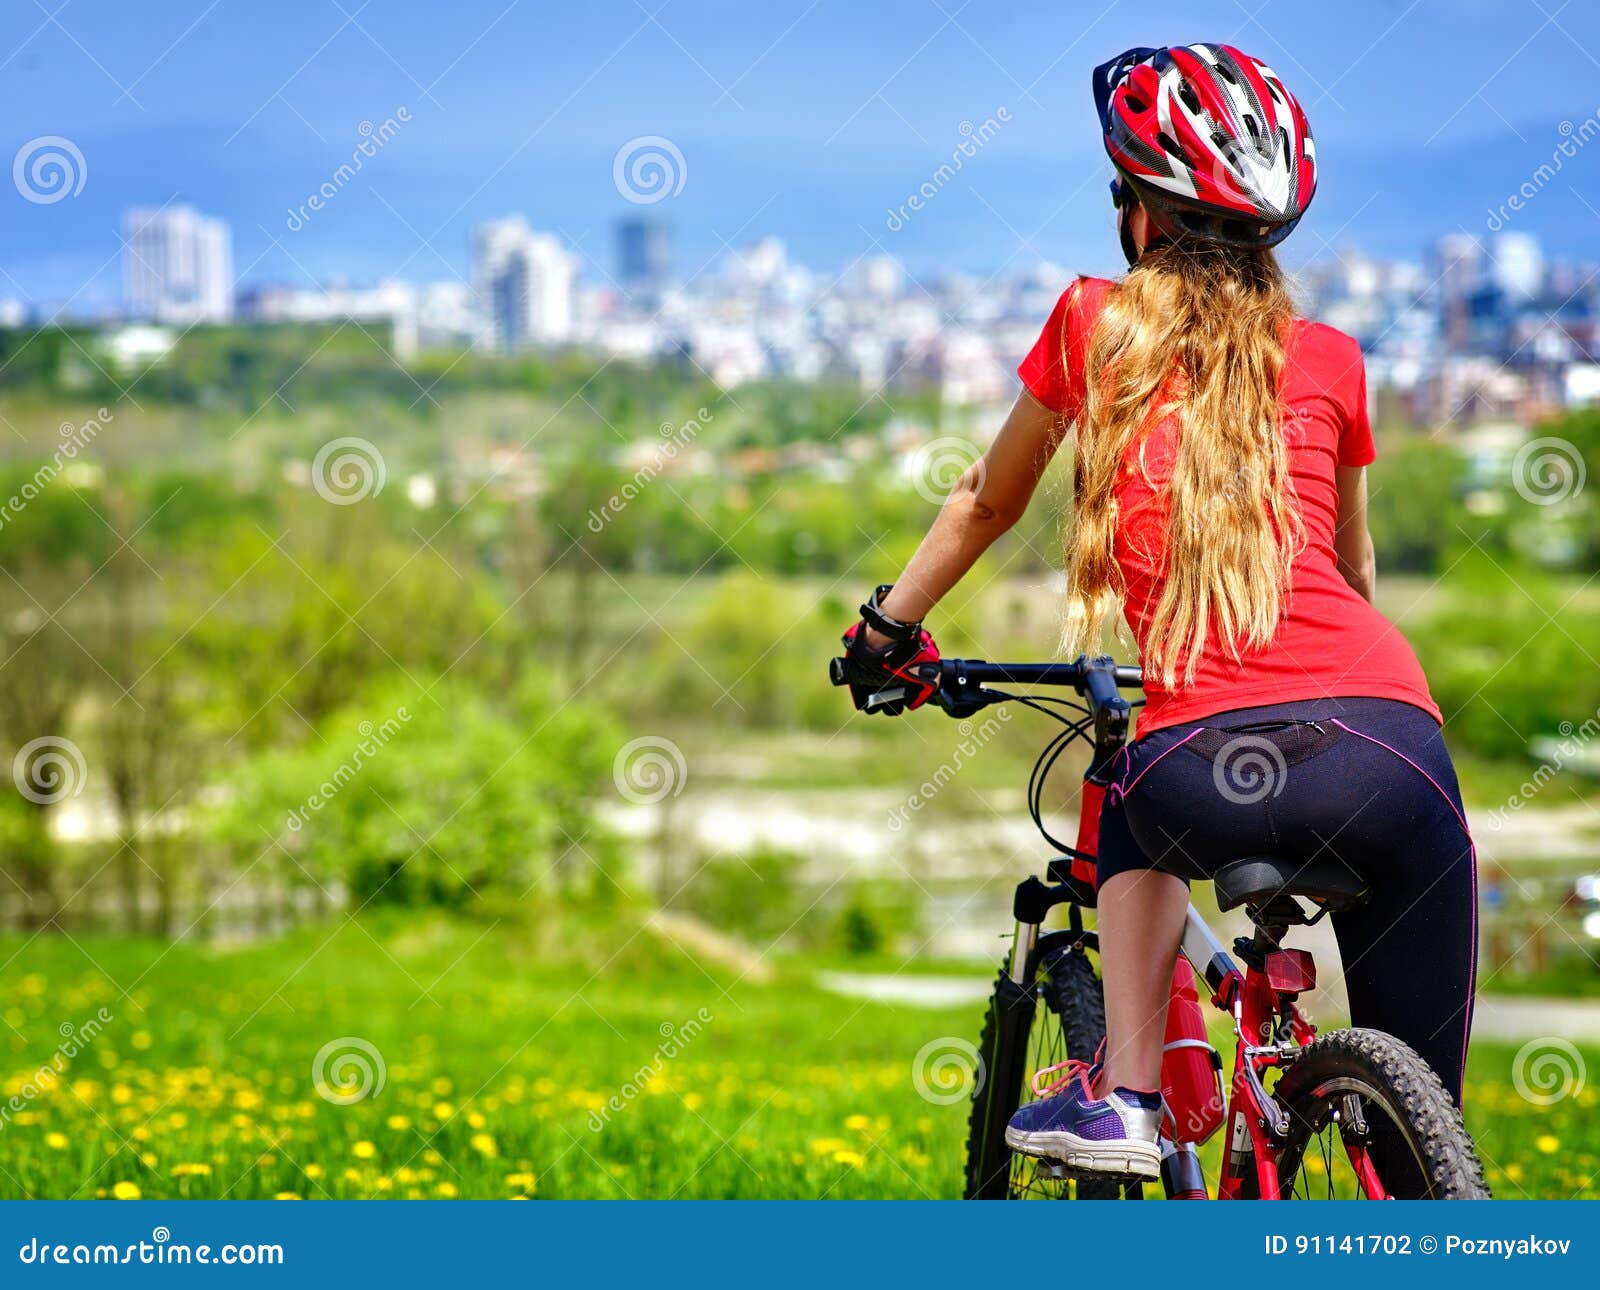 Велосипед со светом. Девушка в велосипедном шлеме. Девушка на велосипеде в шлеме. Шлем для девочки велосипедный. Девочка катается на велосипеде со шлемом.